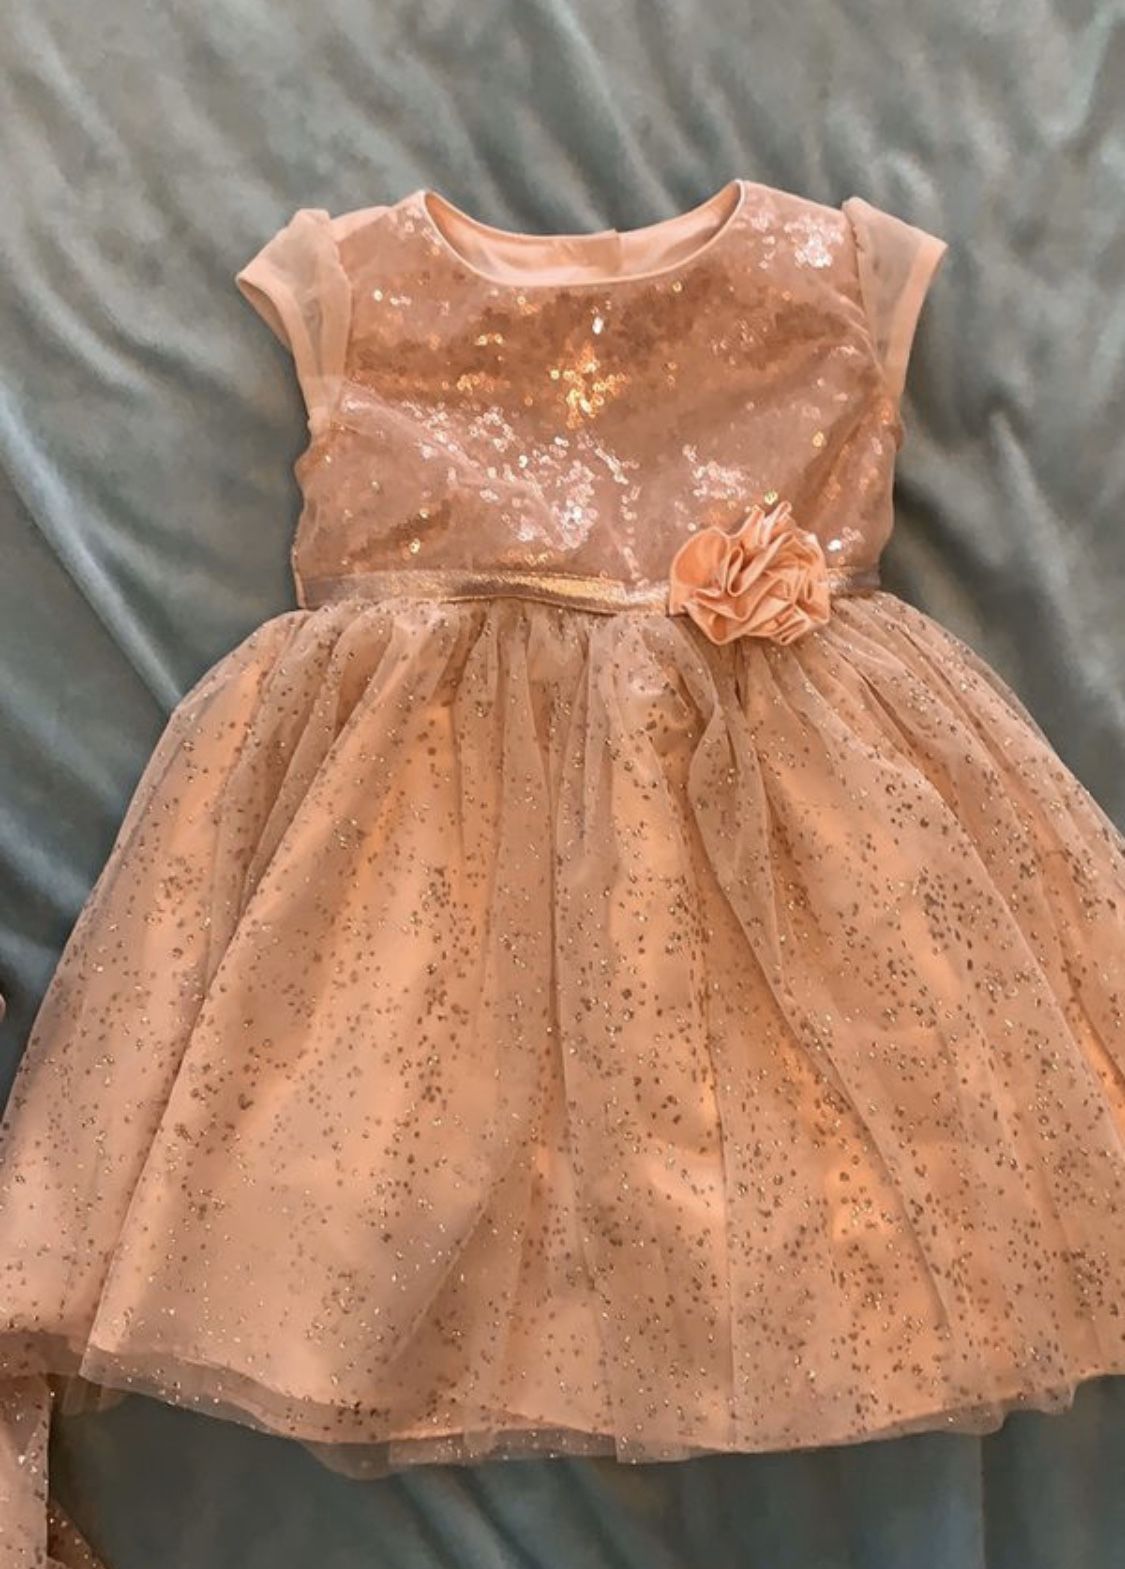 Fancy glittery dress